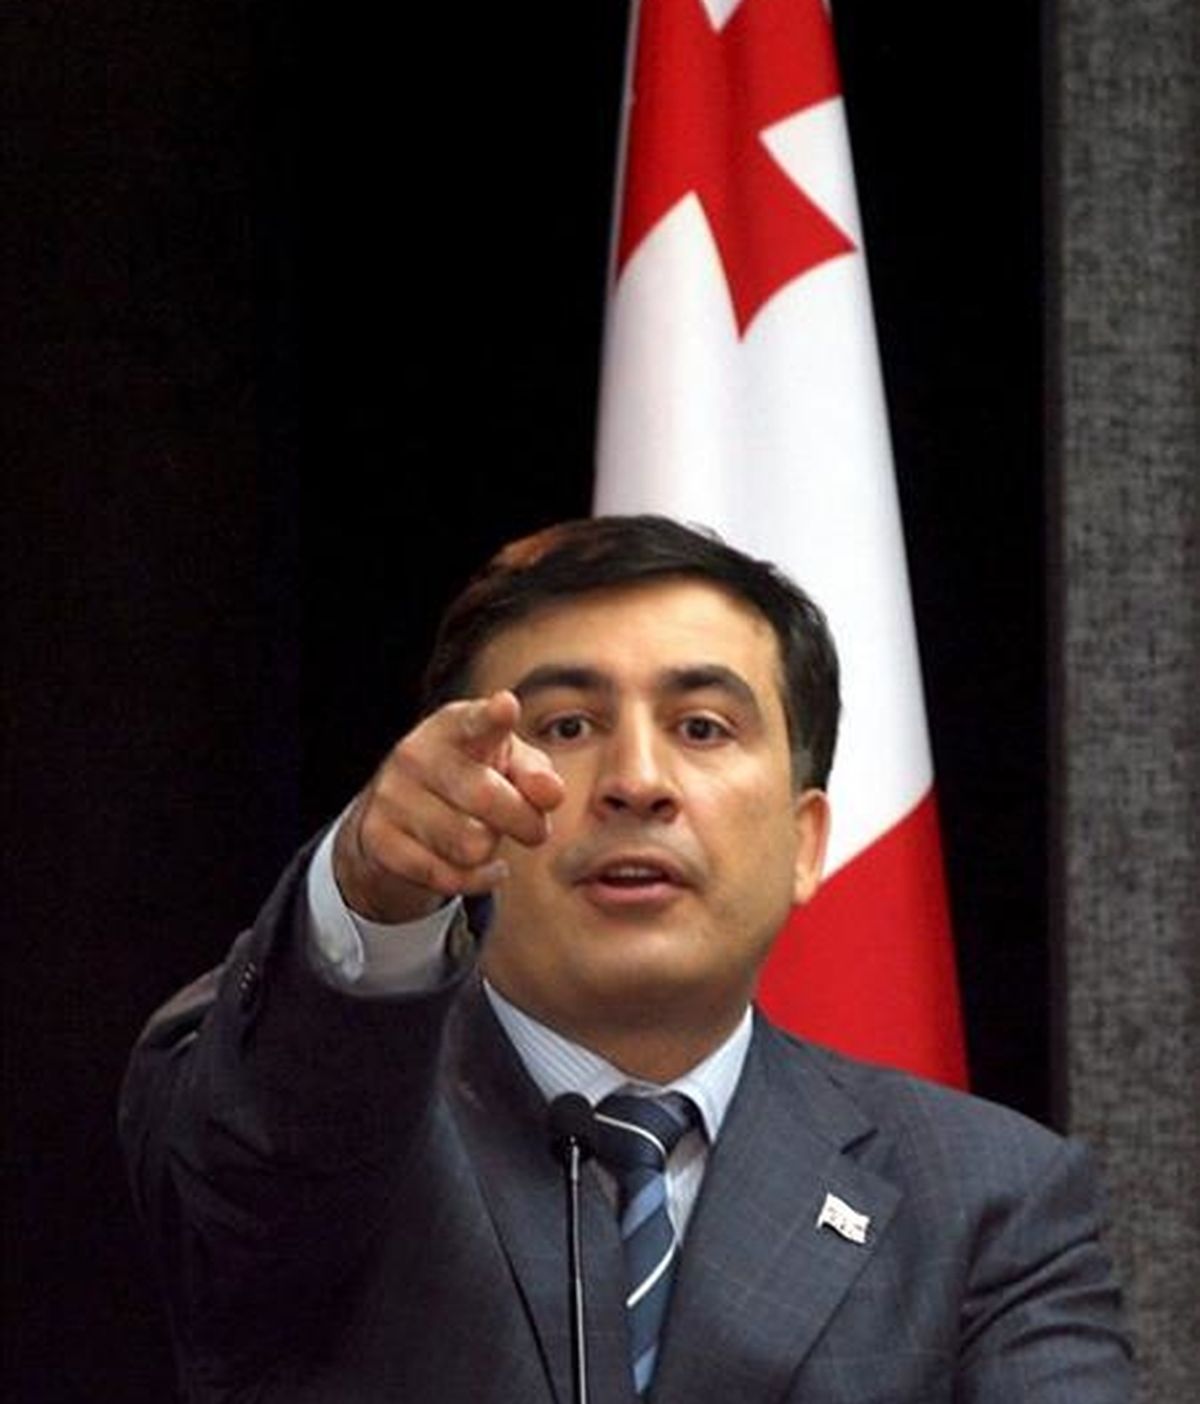 La UE pide diálogo político entre el presidente de Georgia y la oposición. En la imagen, el presidente de Georgia, Mijaíl Saakashvili. EFE/Archivo